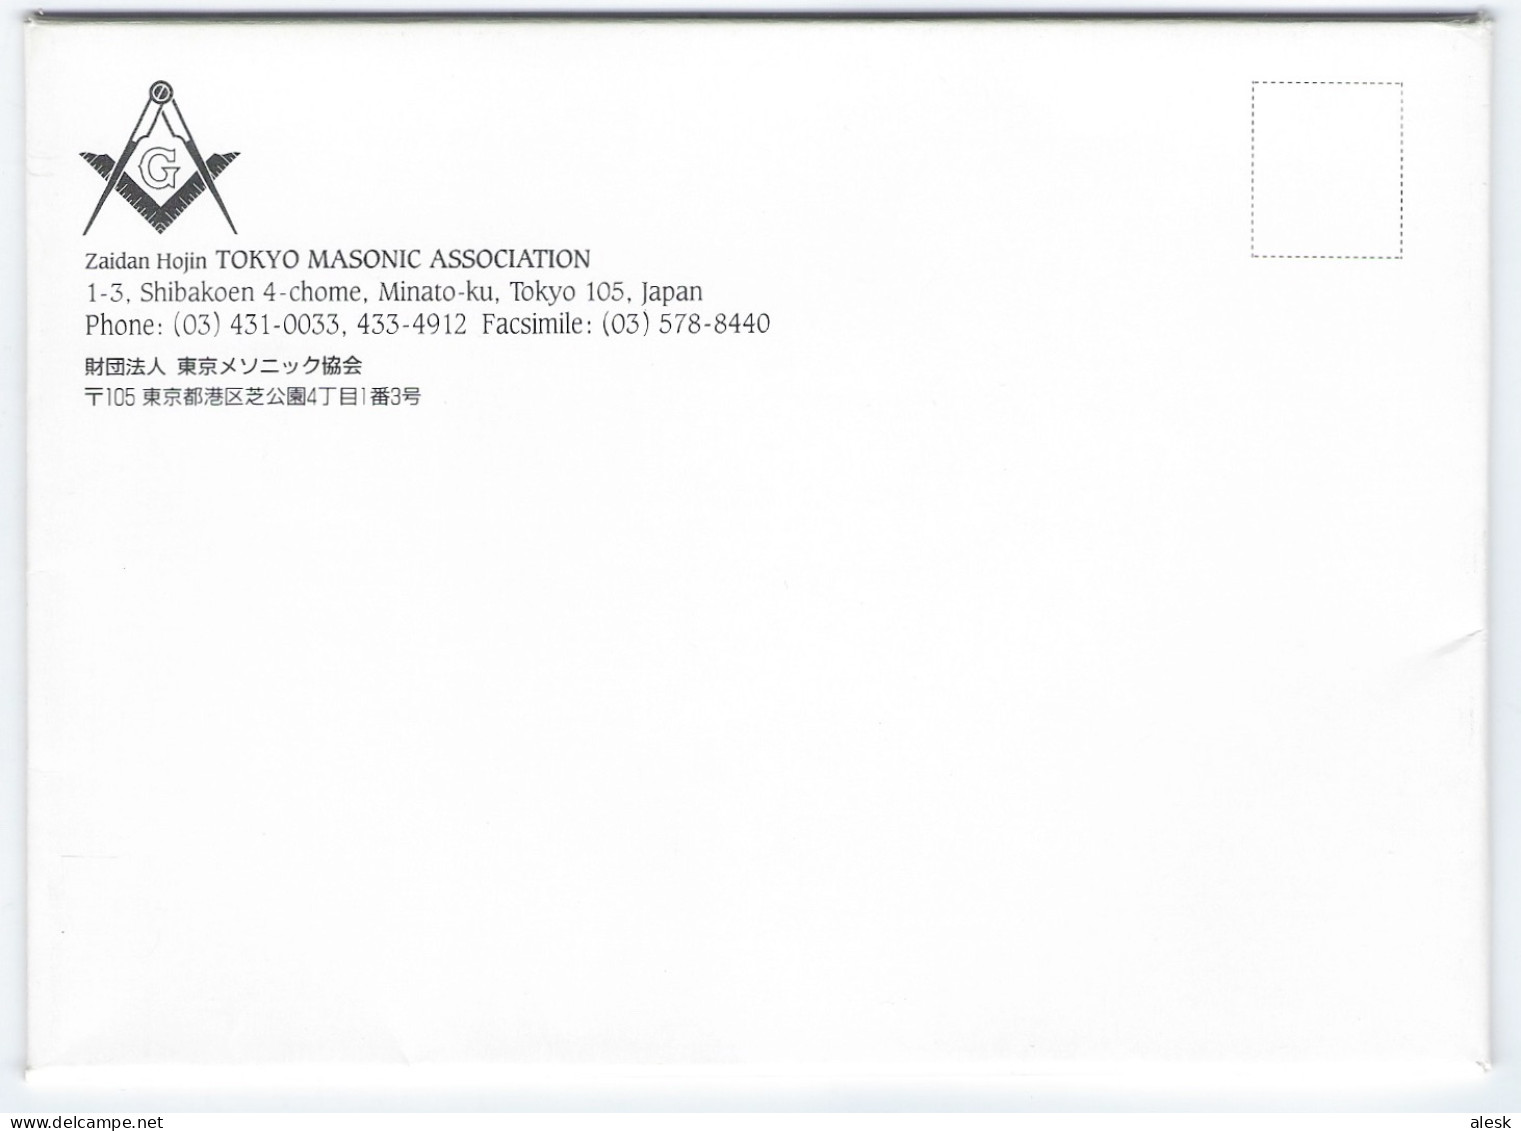 TOKYO MASONIC ASSOCIATION - CARNET DE 10 PHOTOS - Voir scannes